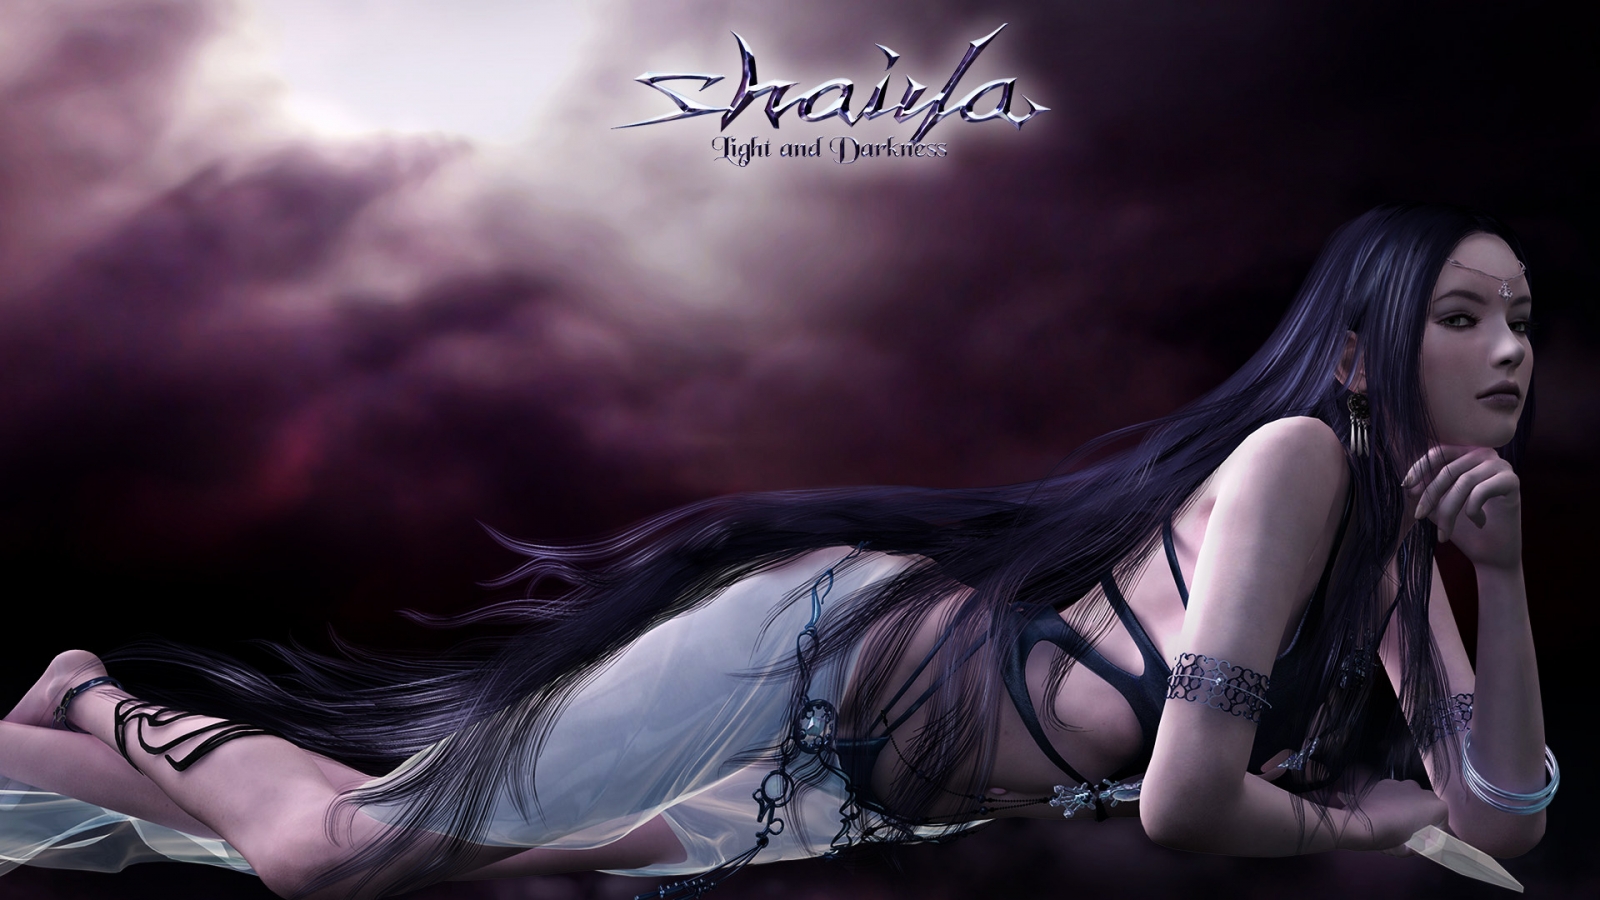 Shaiya Long Purple Hair for 1600 x 900 HDTV resolution